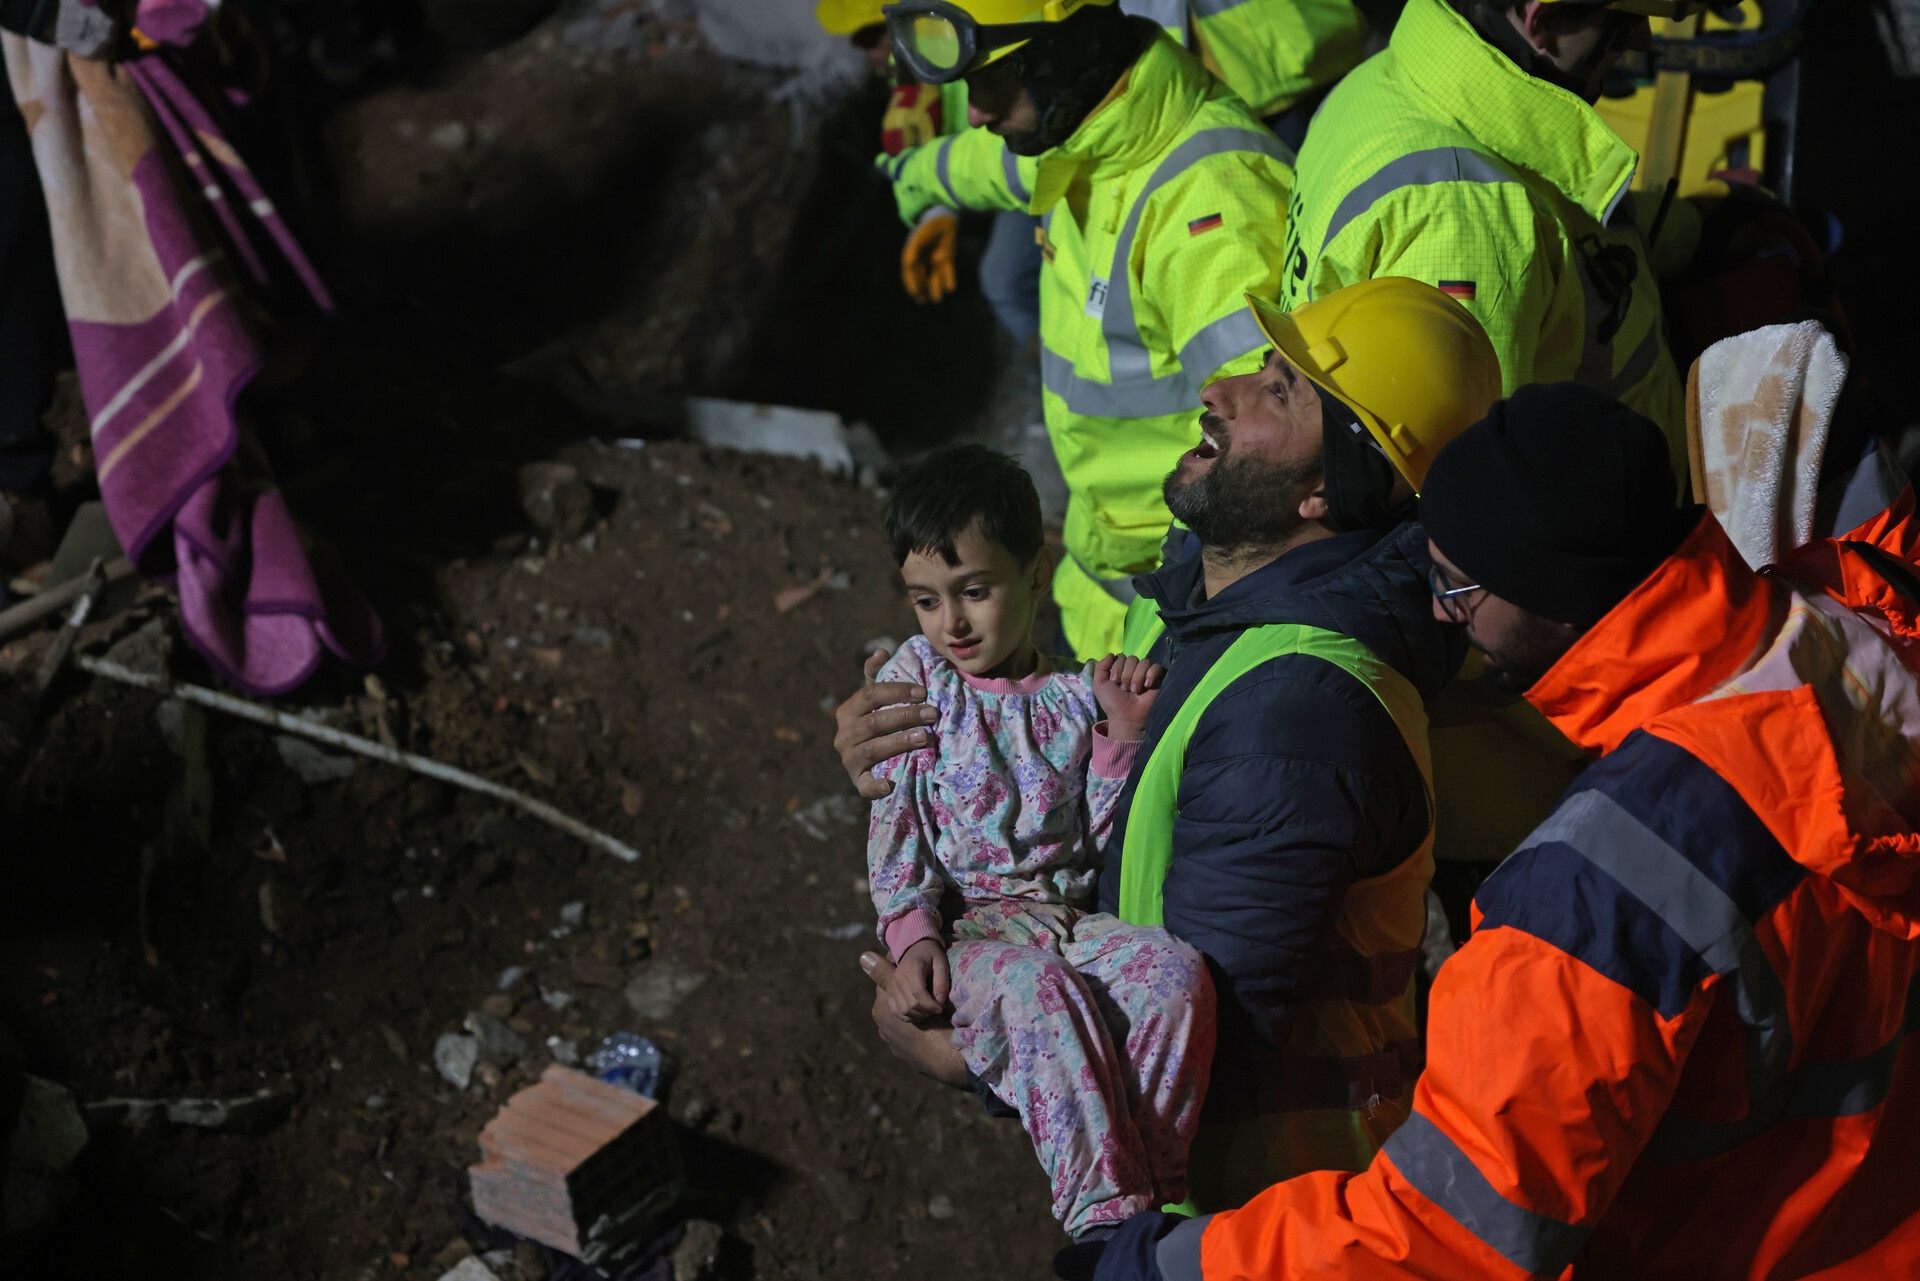 Σεισμός σε Τουρκία-Συρία: Πάνω από 15.300 νεκροί- Εξανεμίζονται οι ελπίδες μετά τις πρώτες 72 ώρες